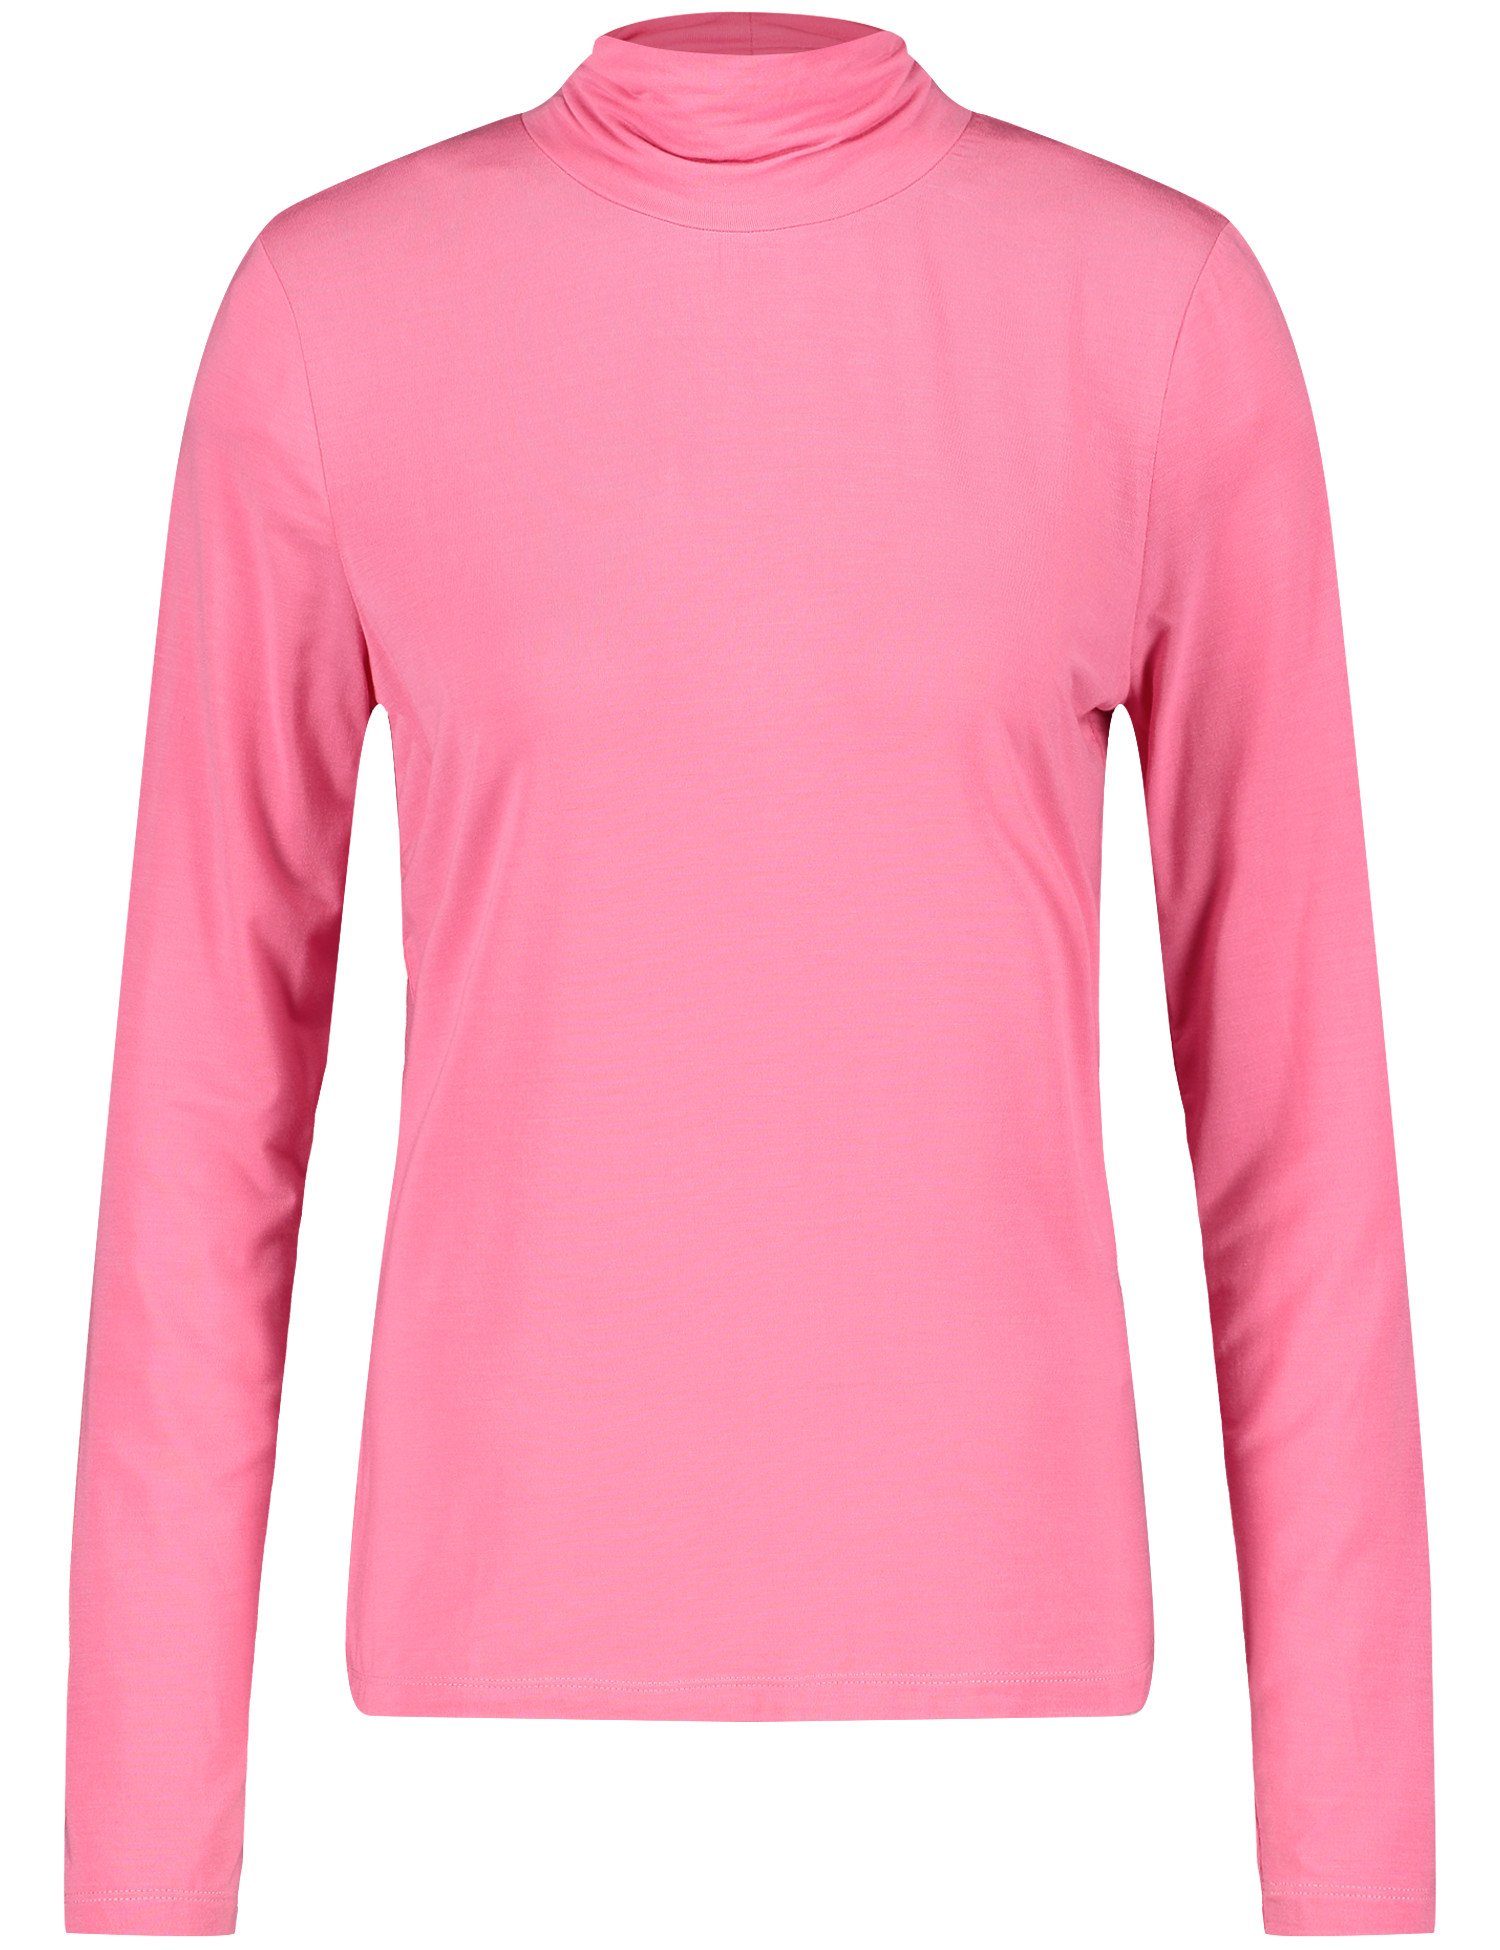 ROSE WEBER 30894 T-Shirt GERRY PINK